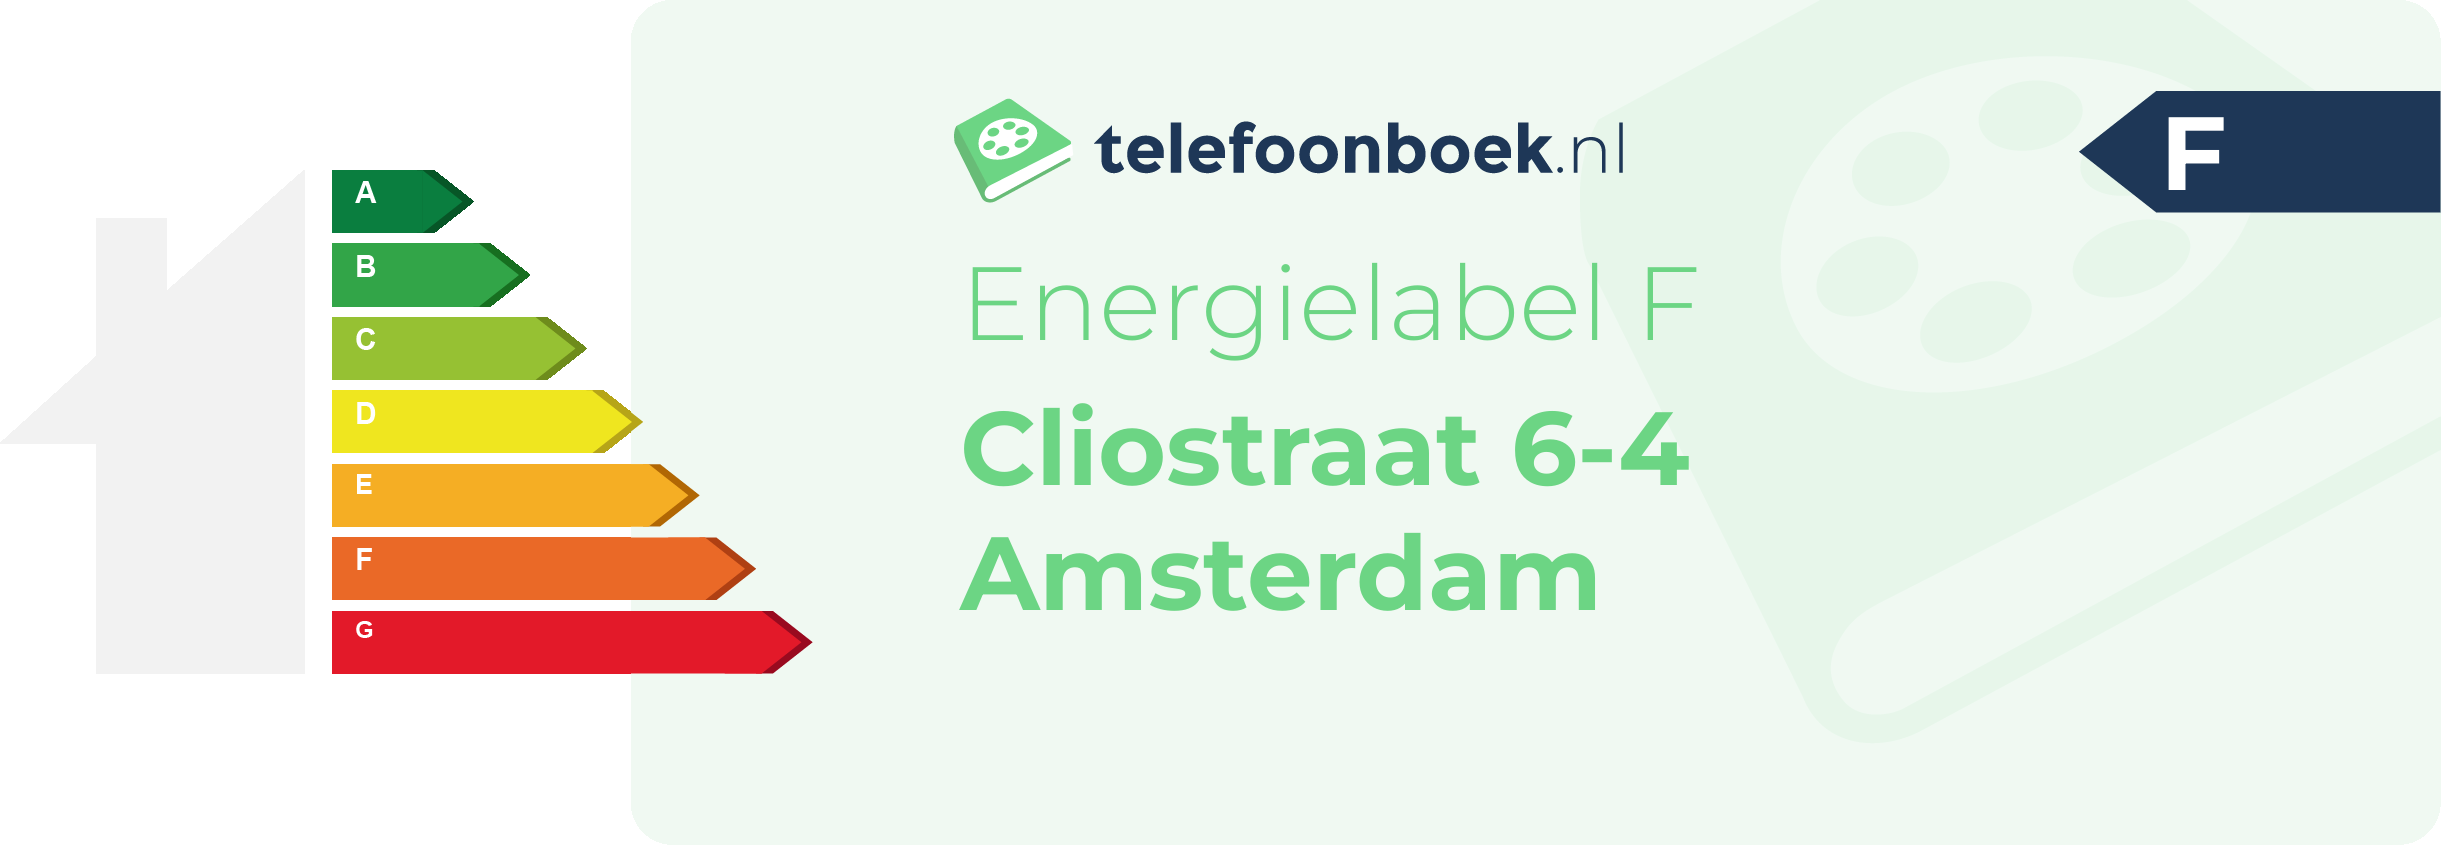 Energielabel Cliostraat 6-4 Amsterdam